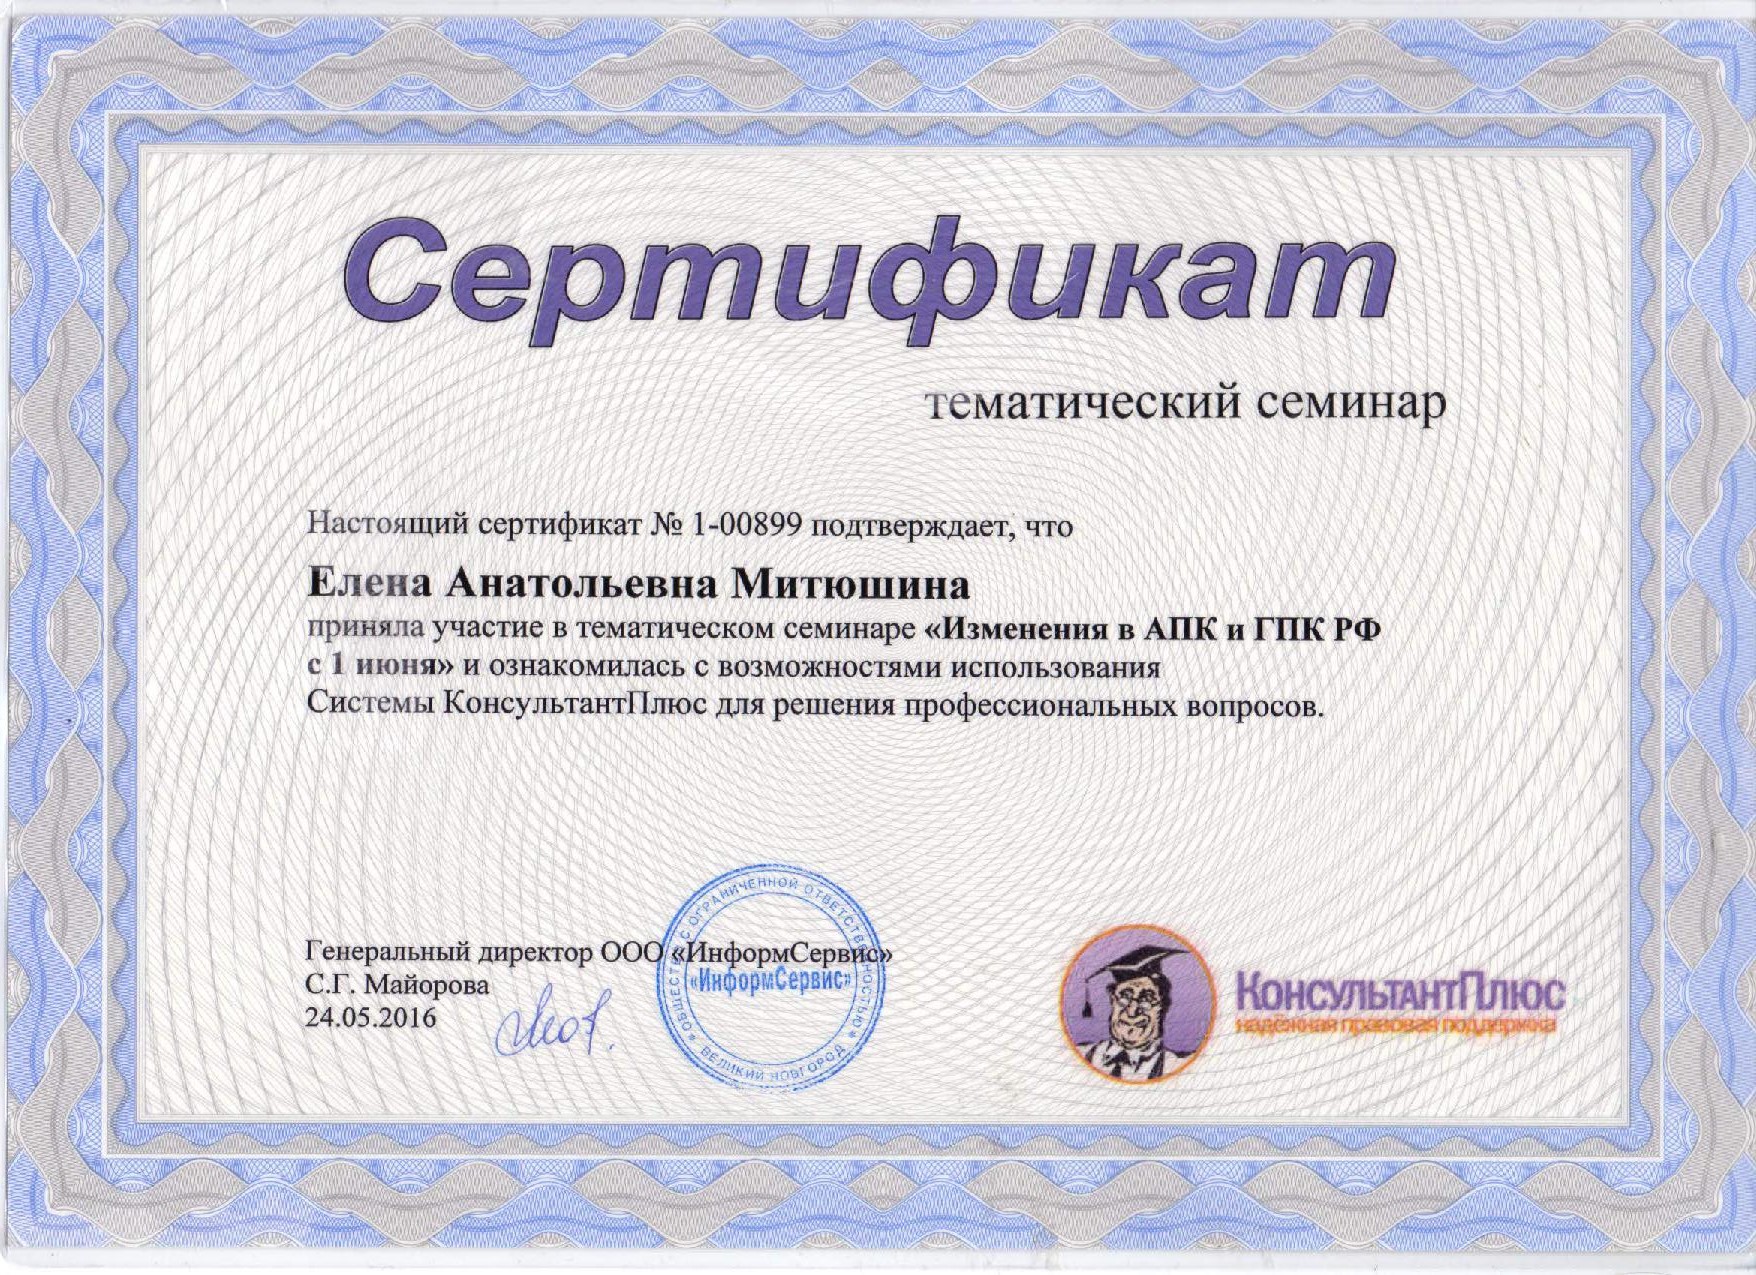 Сертификат "Изменения в АПК и ГПК РФ"